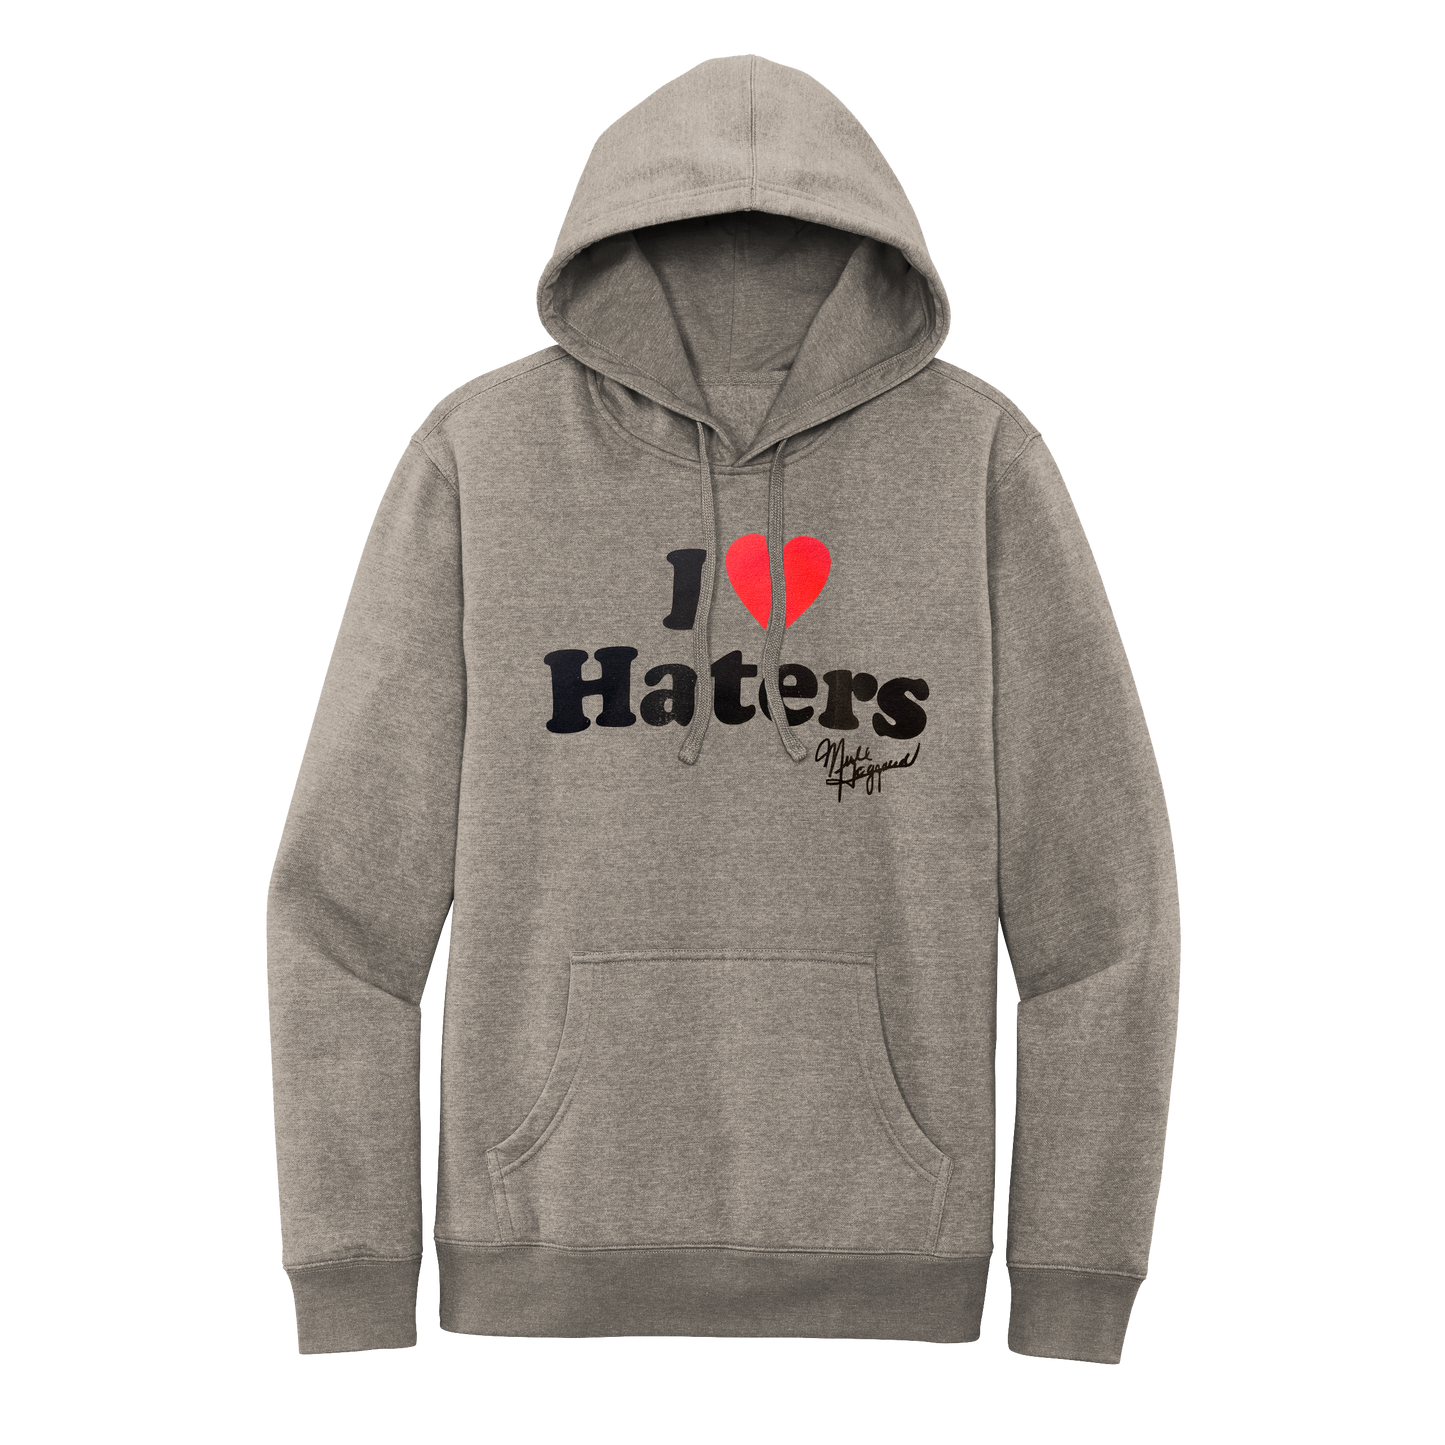 Merle Haggard Haters Grey Hoodie – Merle Haggard Official Store